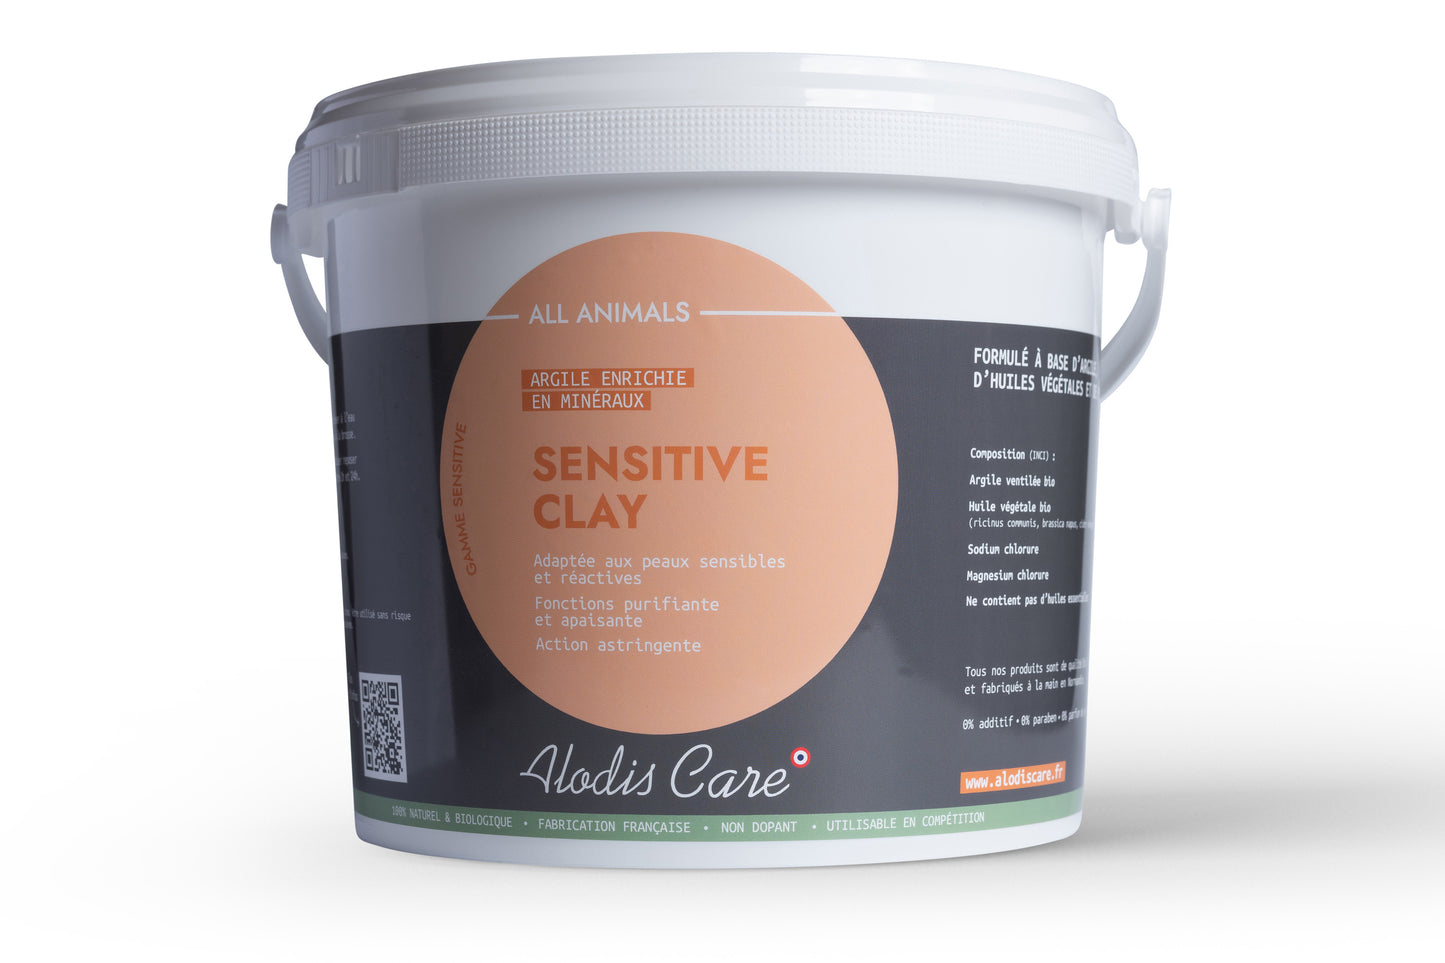 Sensitive Clay argile peaux sensibles - Alodis Care